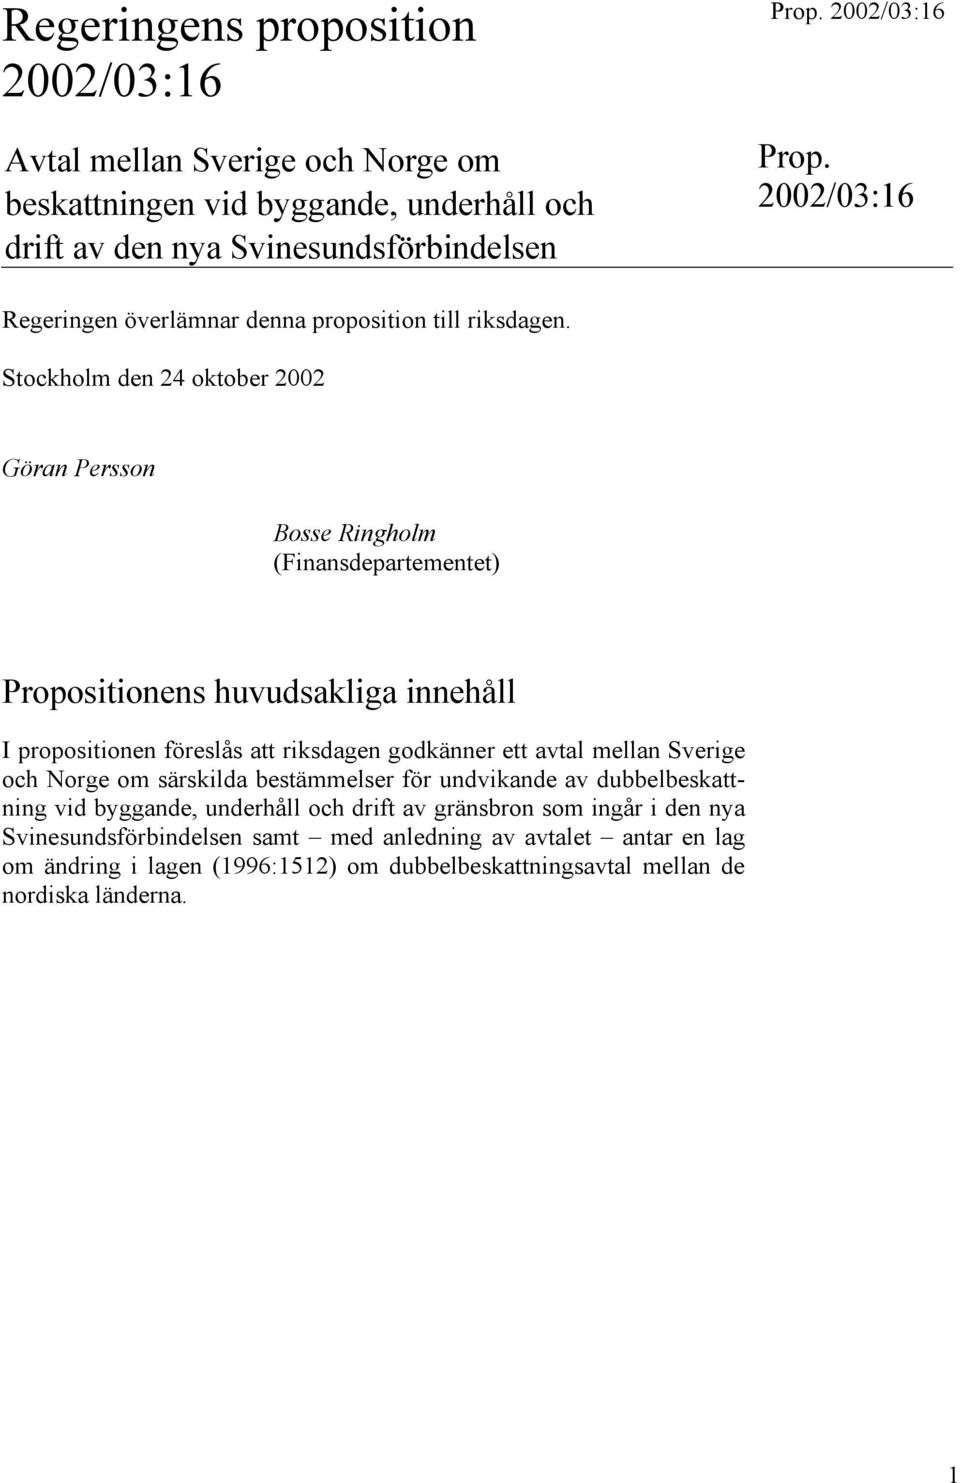 Stockholm den 24 oktober 2002 Göran Persson Bosse Ringholm (Finansdepartementet) Propositionens huvudsakliga innehåll I propositionen föreslås att riksdagen godkänner ett avtal